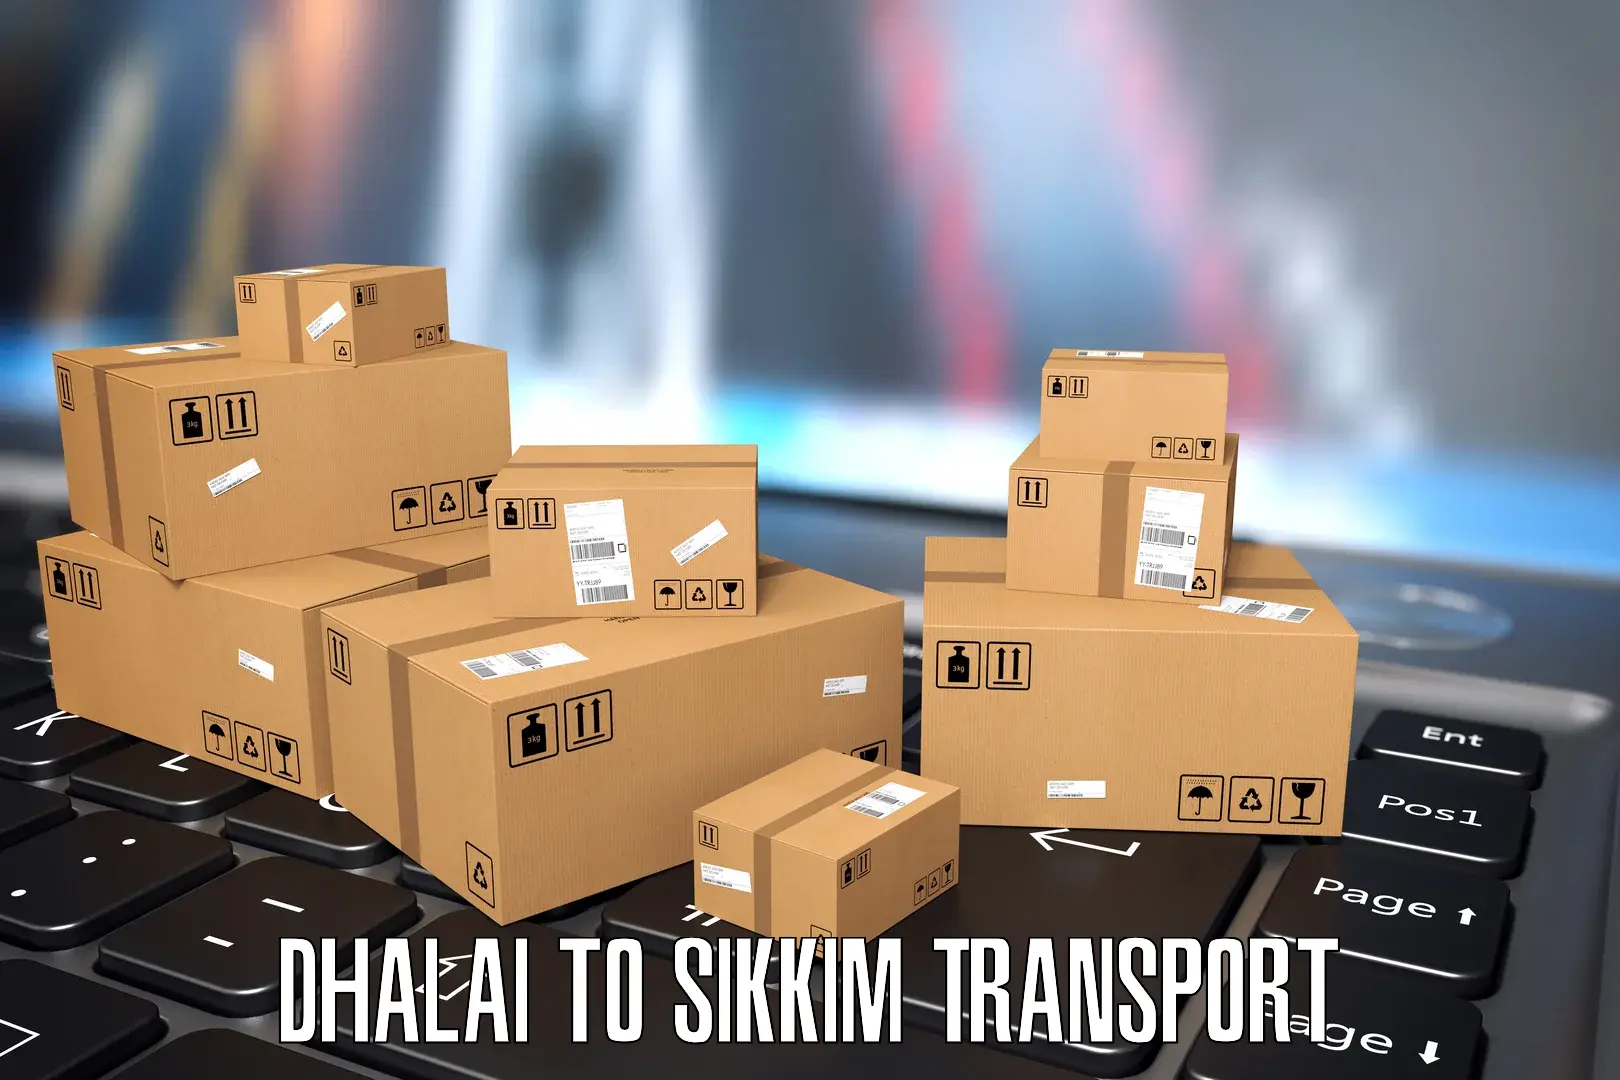 Furniture transport service Dhalai to Namchi